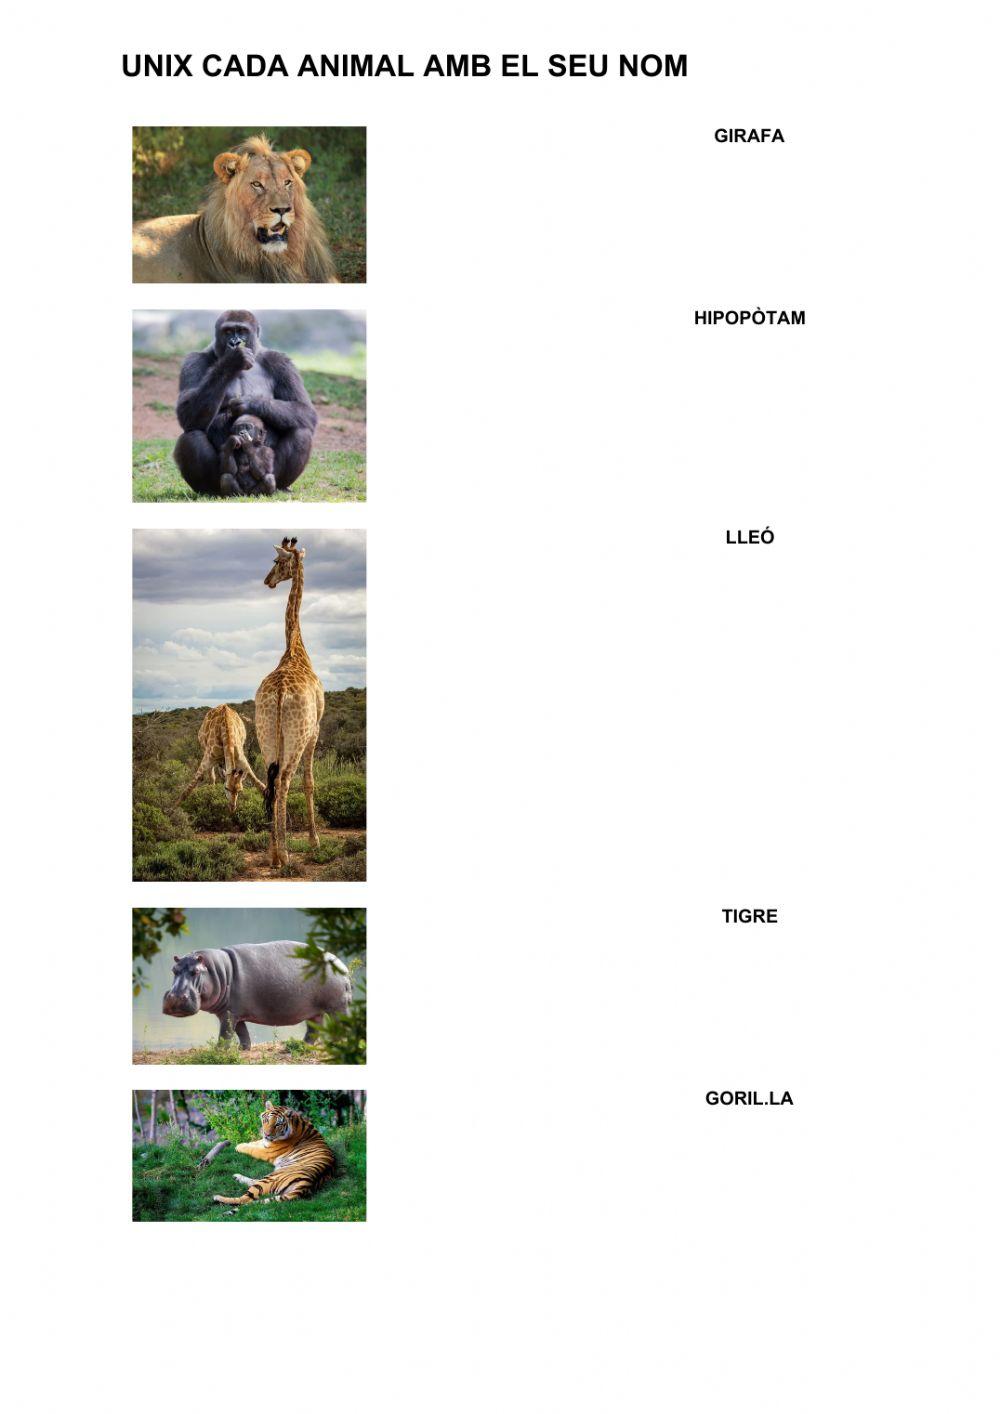 Vocabulari : animals salvatges